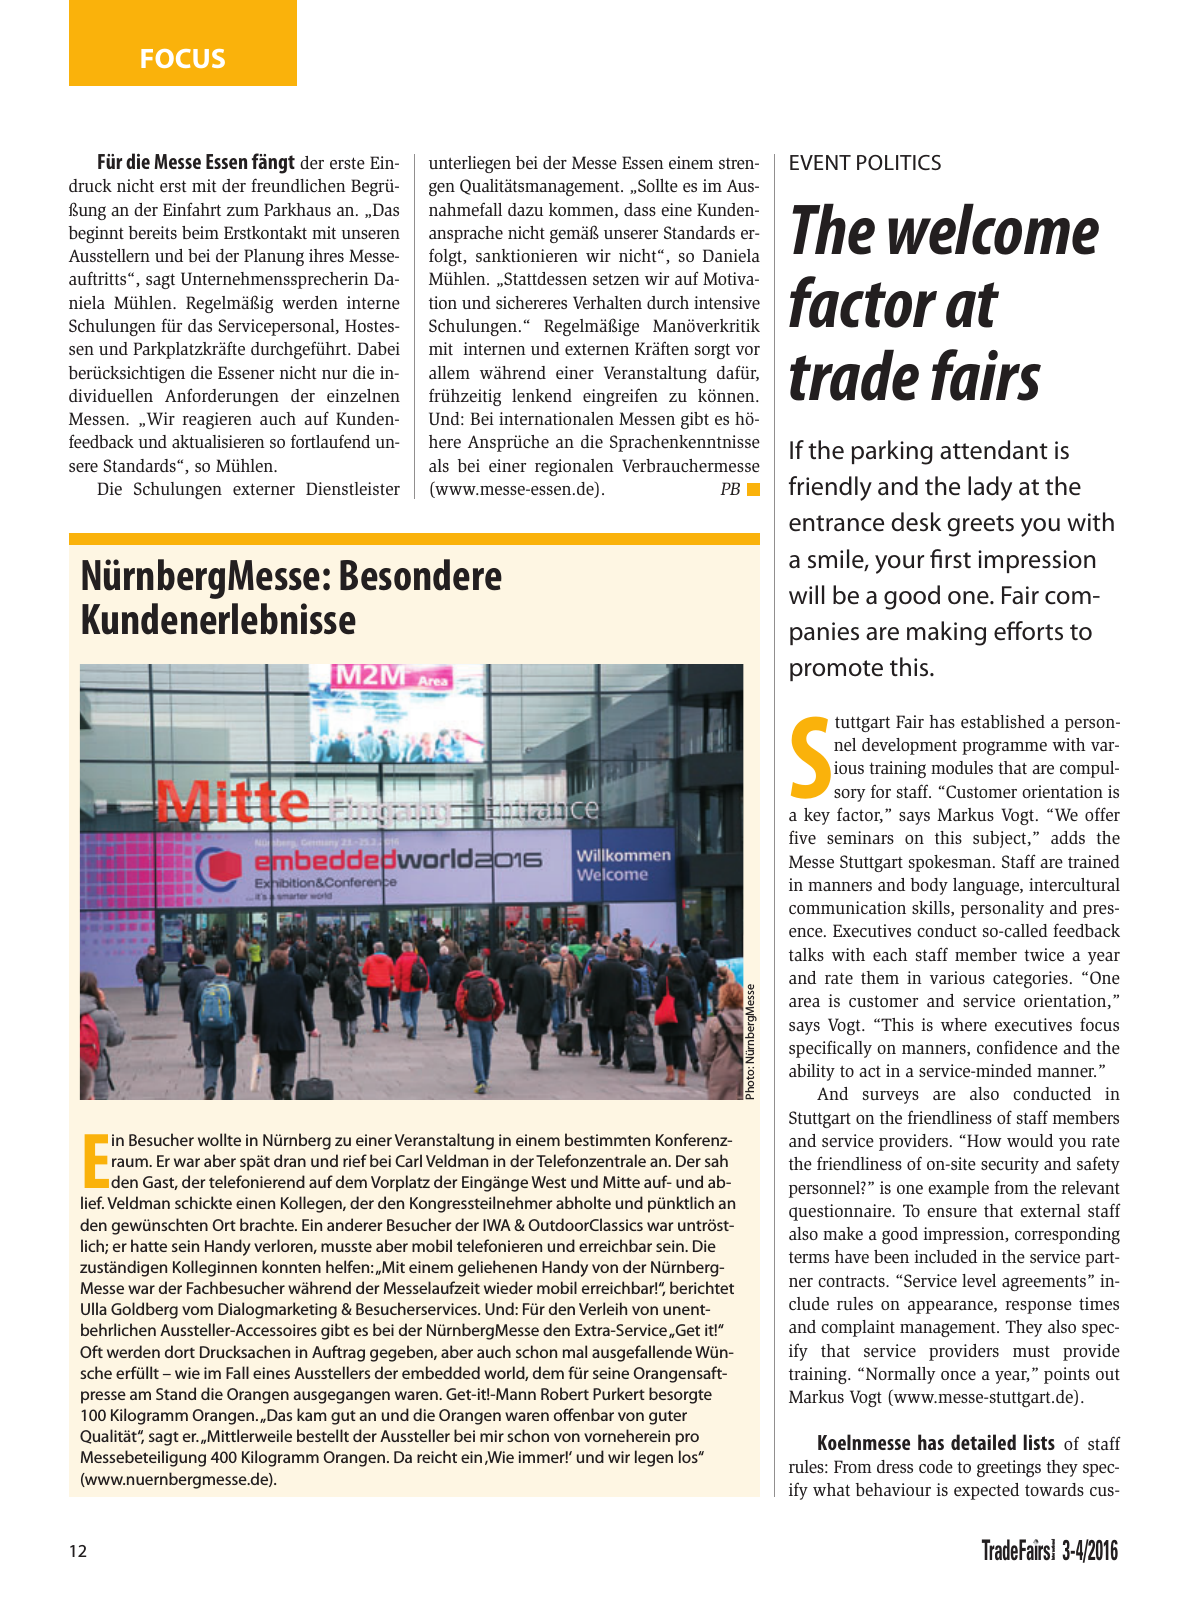 Vorschau TFI Trade-Fairs-International 03-04/2016 Seite 12